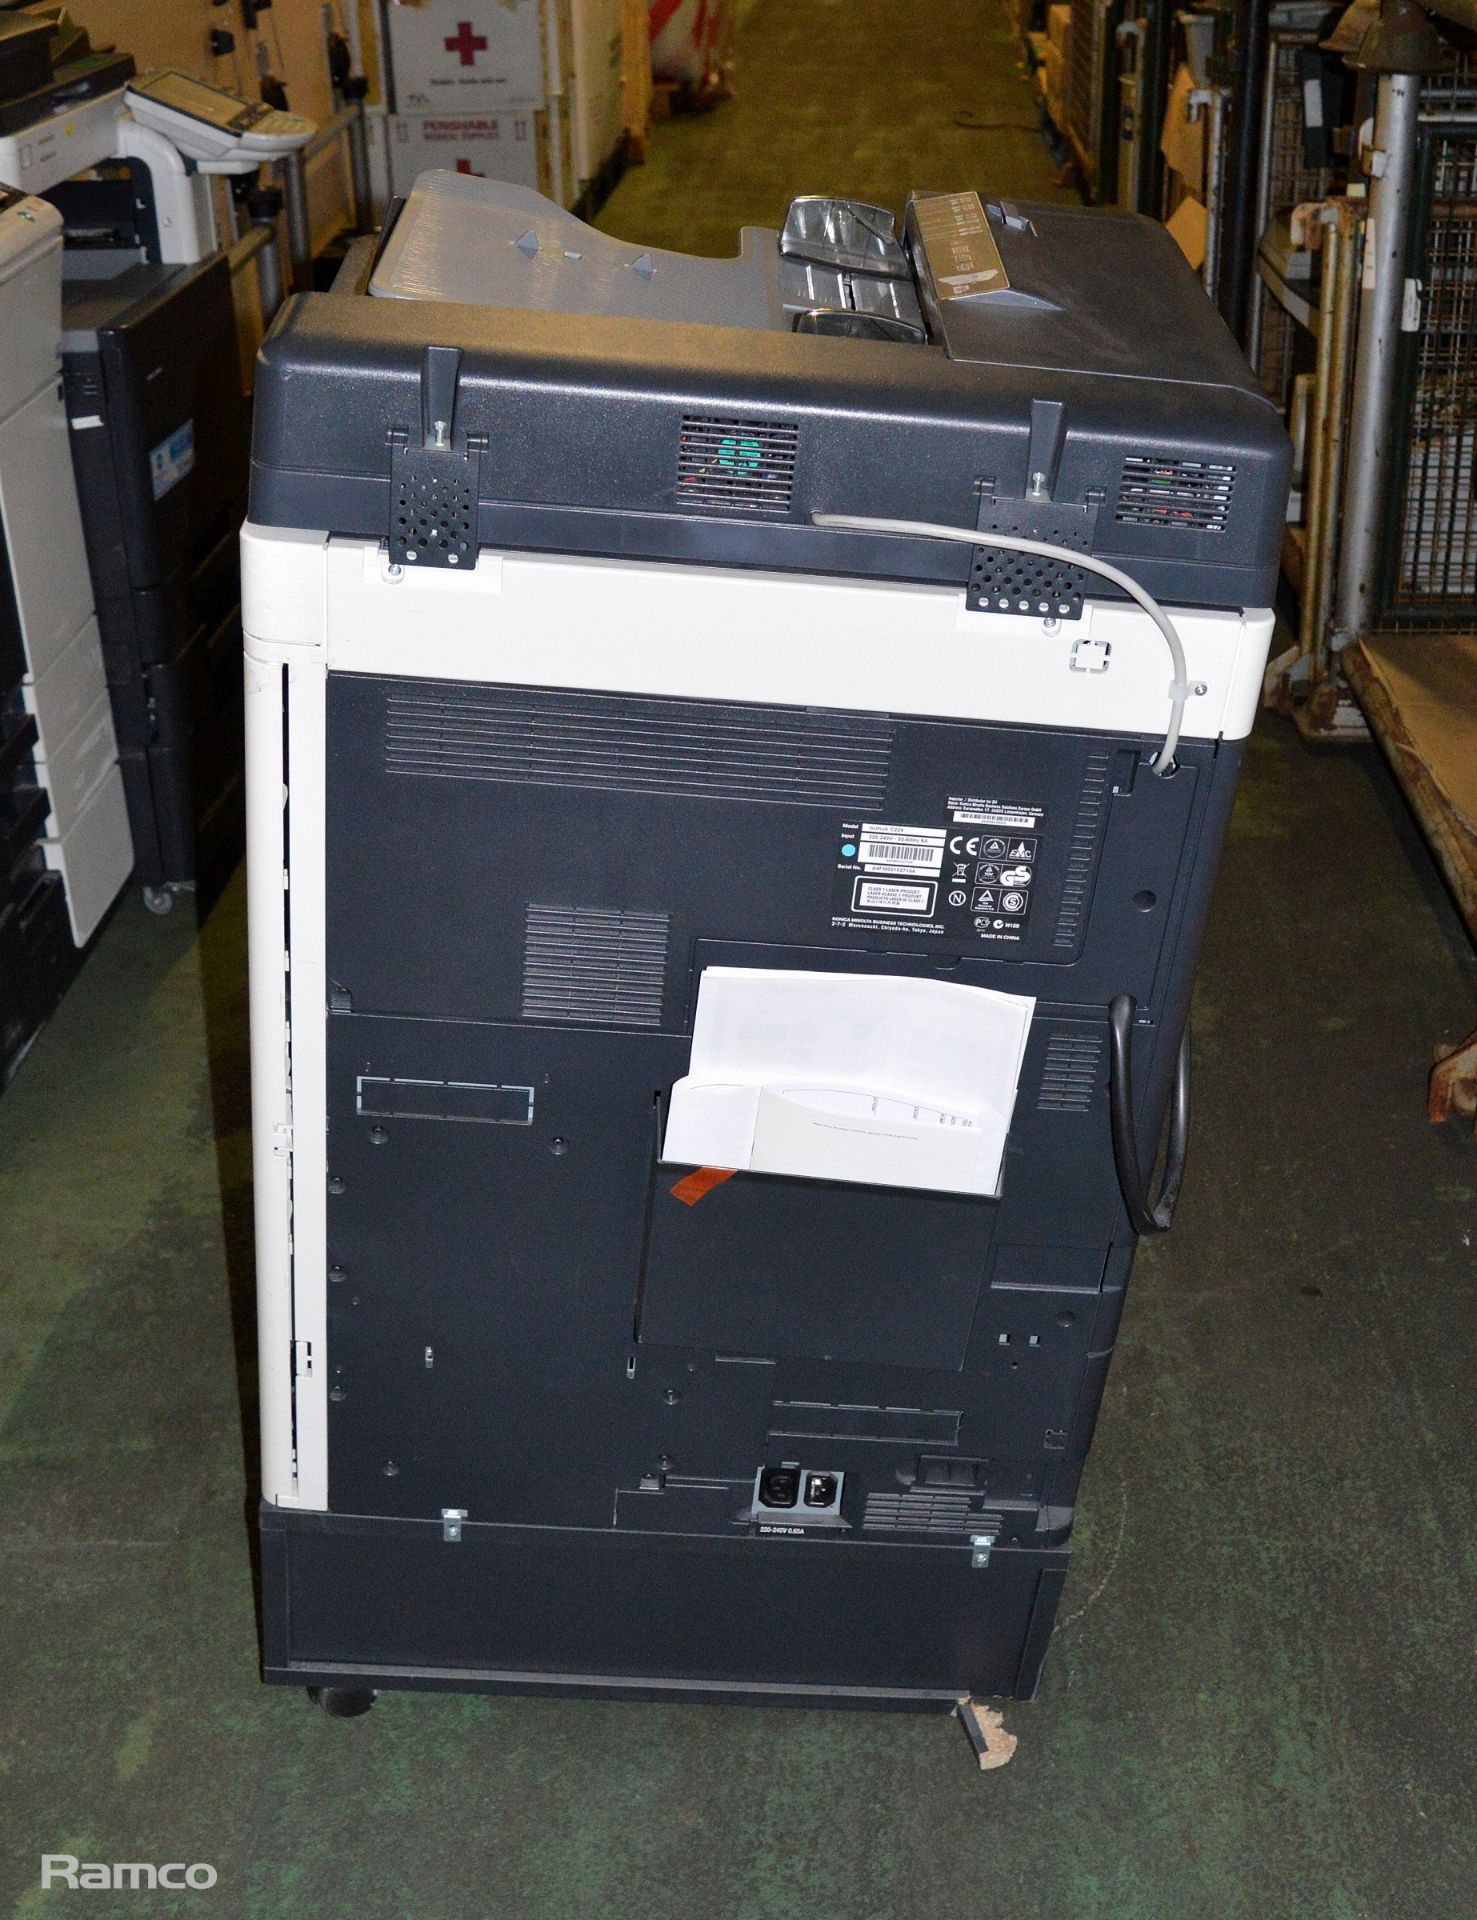 Konica Minolta Bizhub C224 Photocopier - L 650mm x W 700mm x H 1150mm - Image 6 of 6